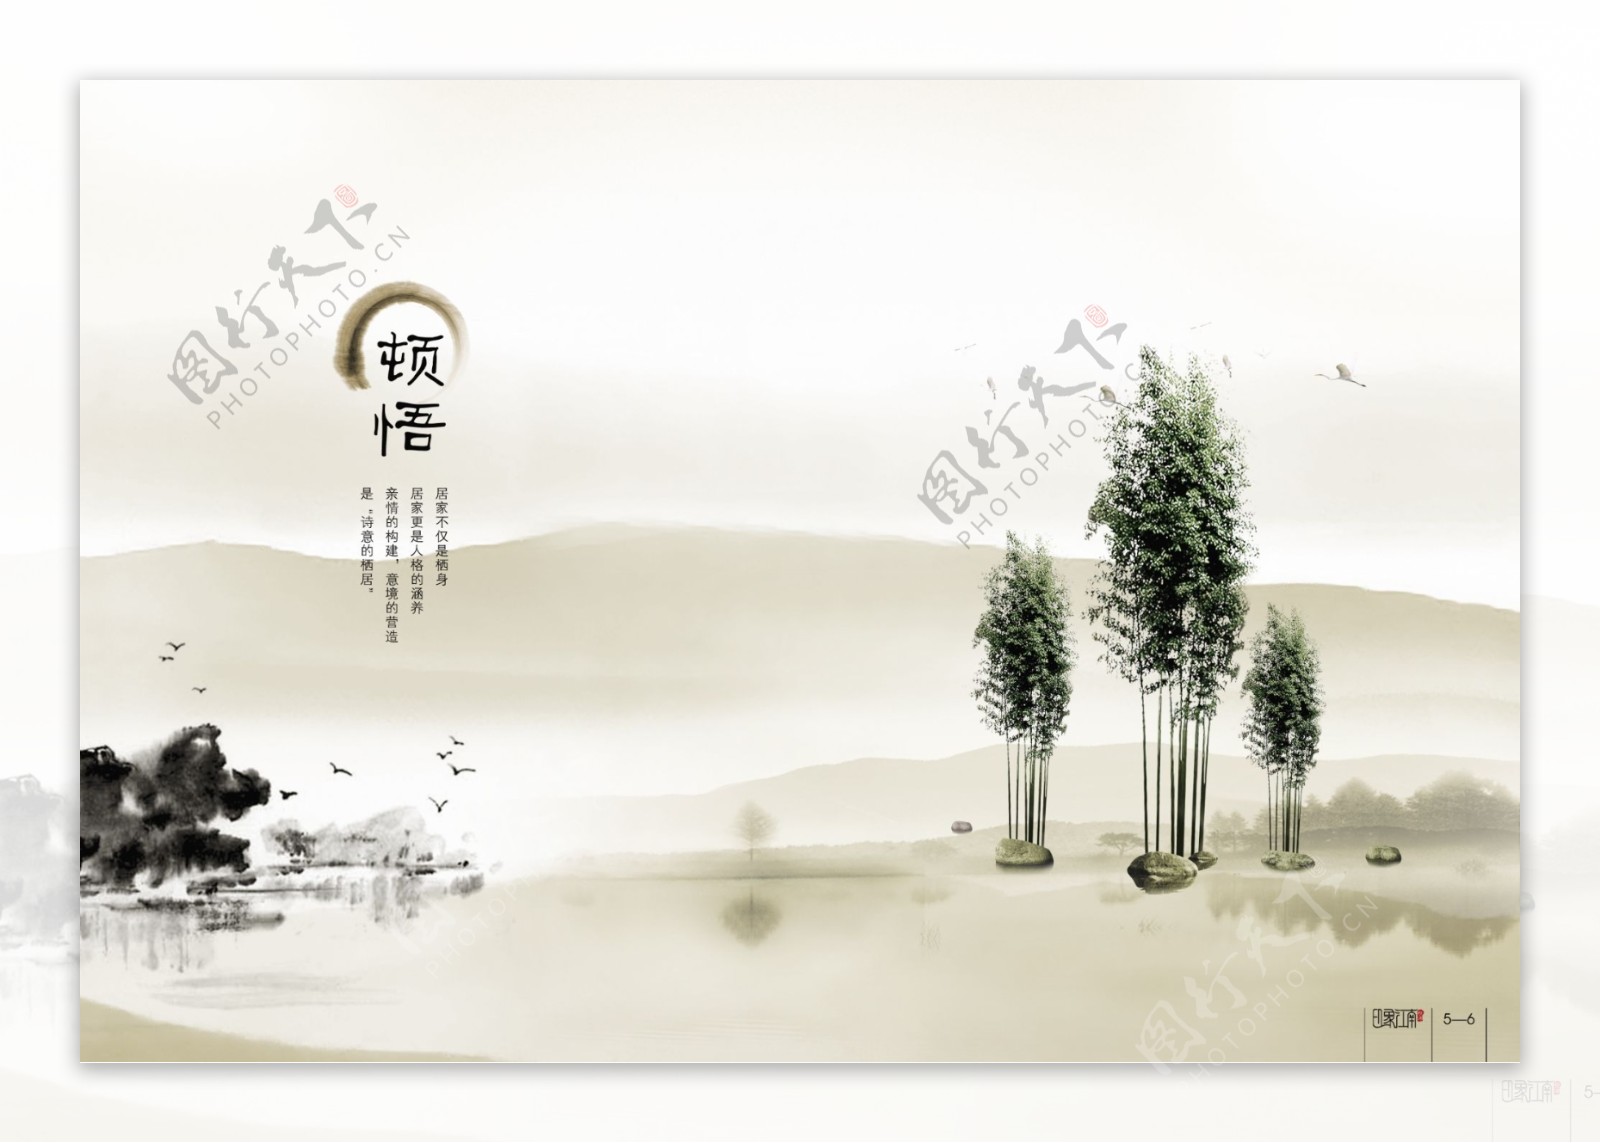 中国传统文化宣传画册图片